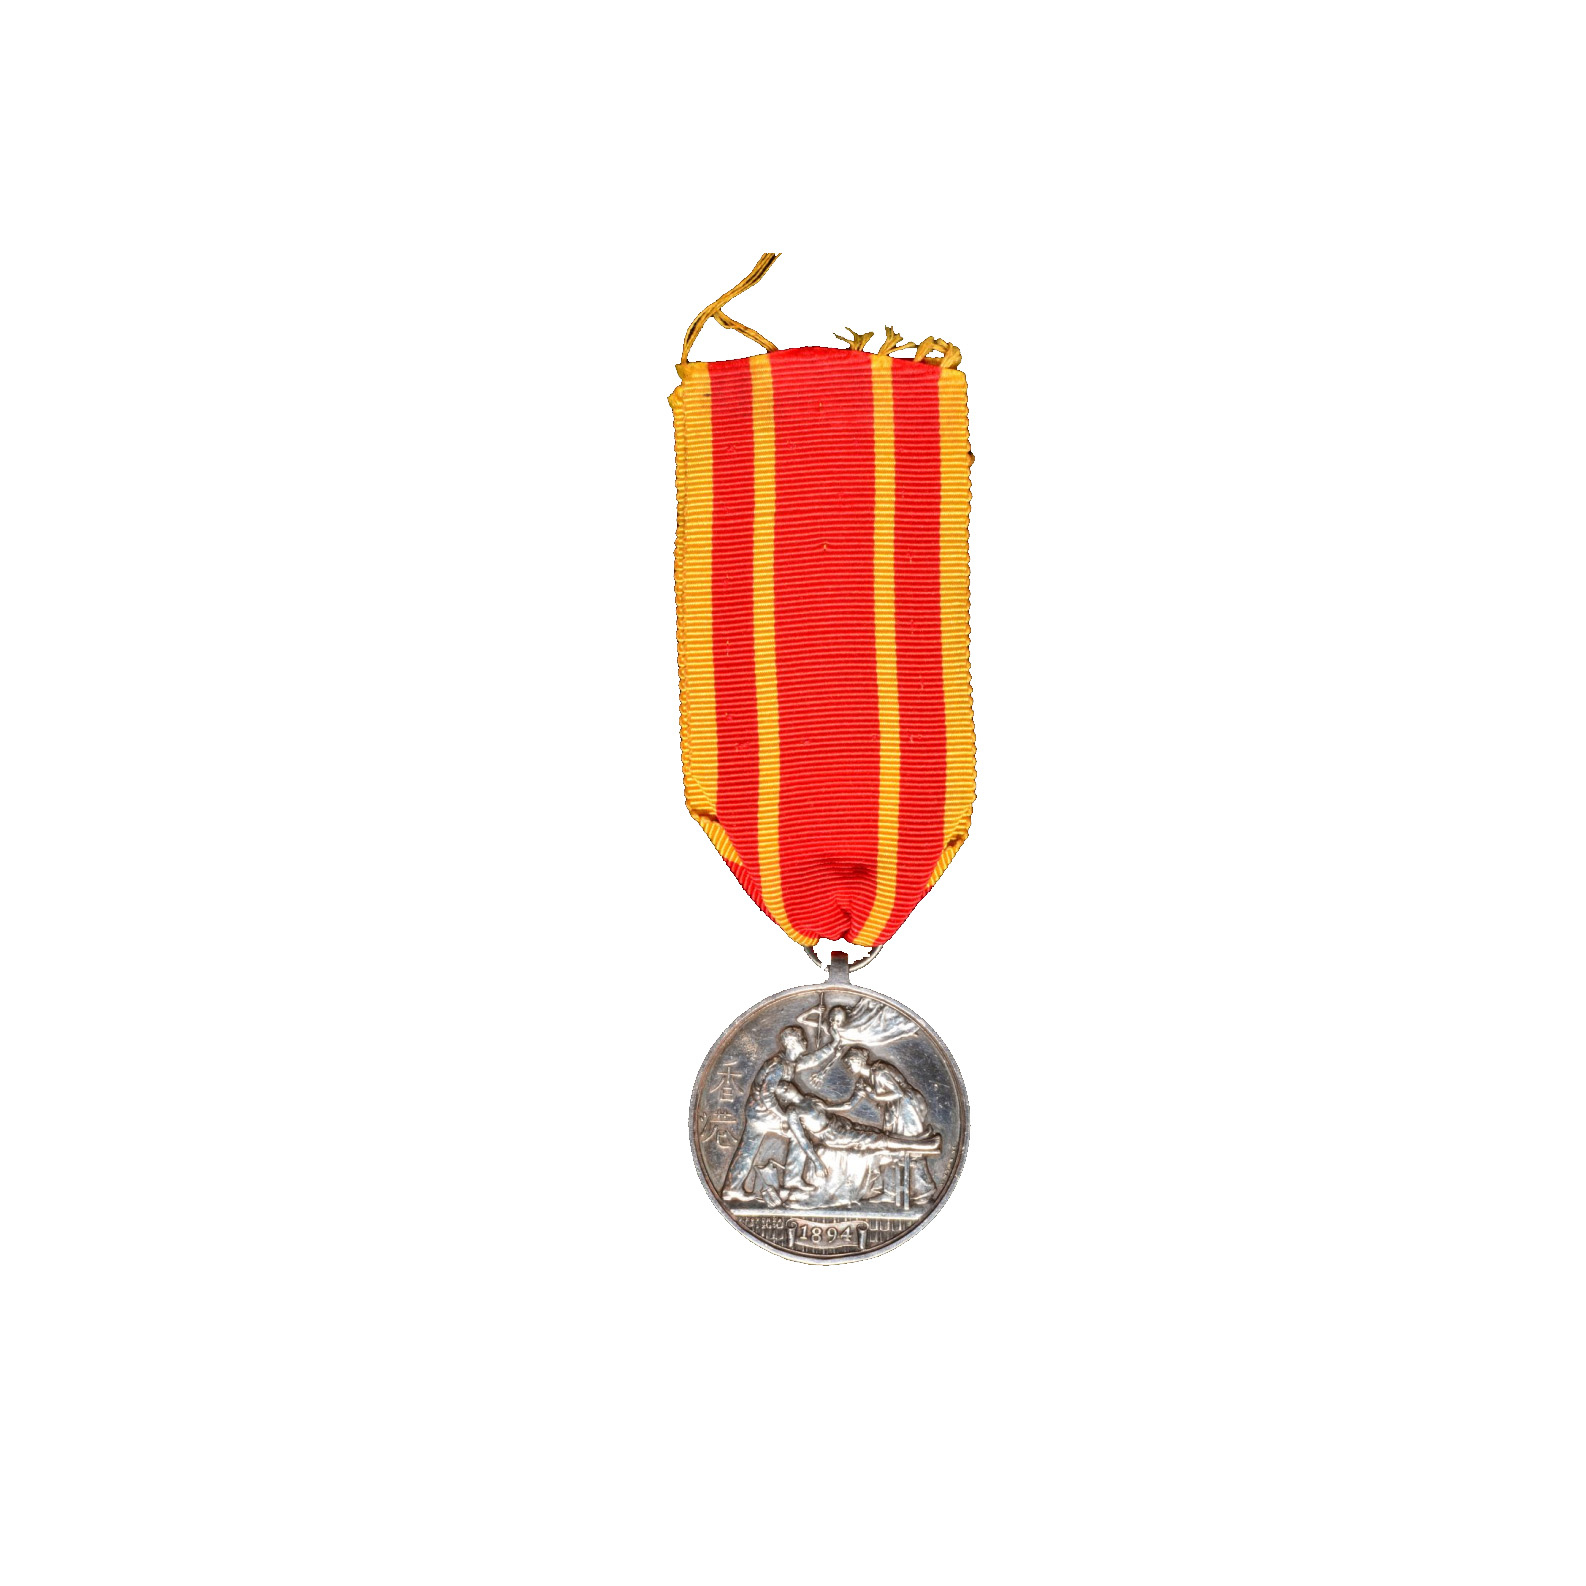 1894年授予斯诺普郡轻步兵团二等兵普赖斯的香港抗疫勋章